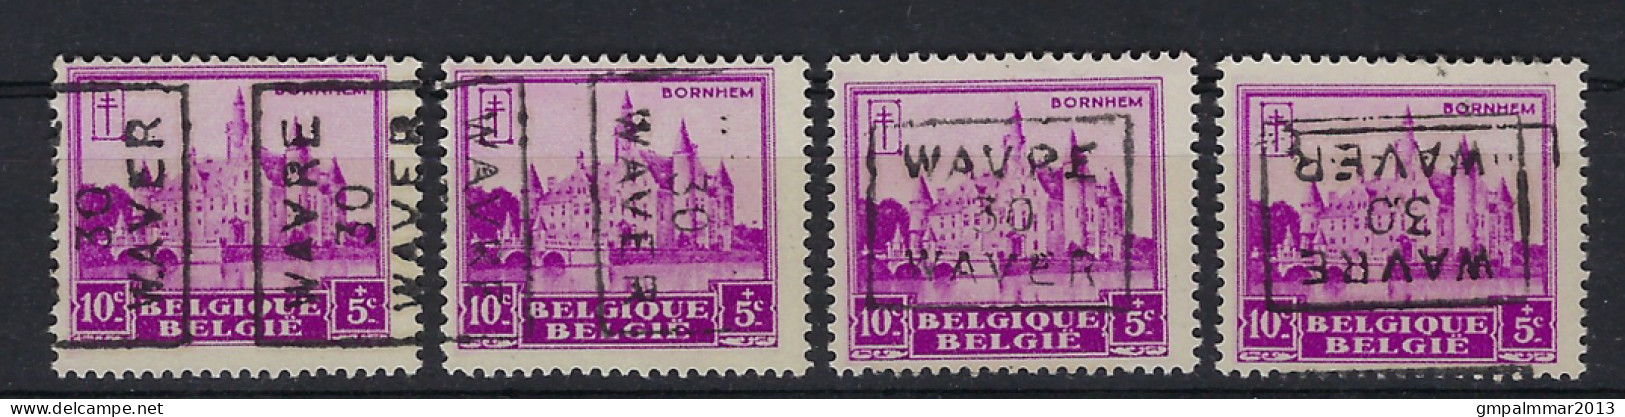 Nr. 308 Kasteel Bornem Voorafstempeling Nr. 6000 A + B + C + D WAVRE 30 WAVER  ; Staat Zie Scan ! LOT 353 - Rollenmarken 1930-..